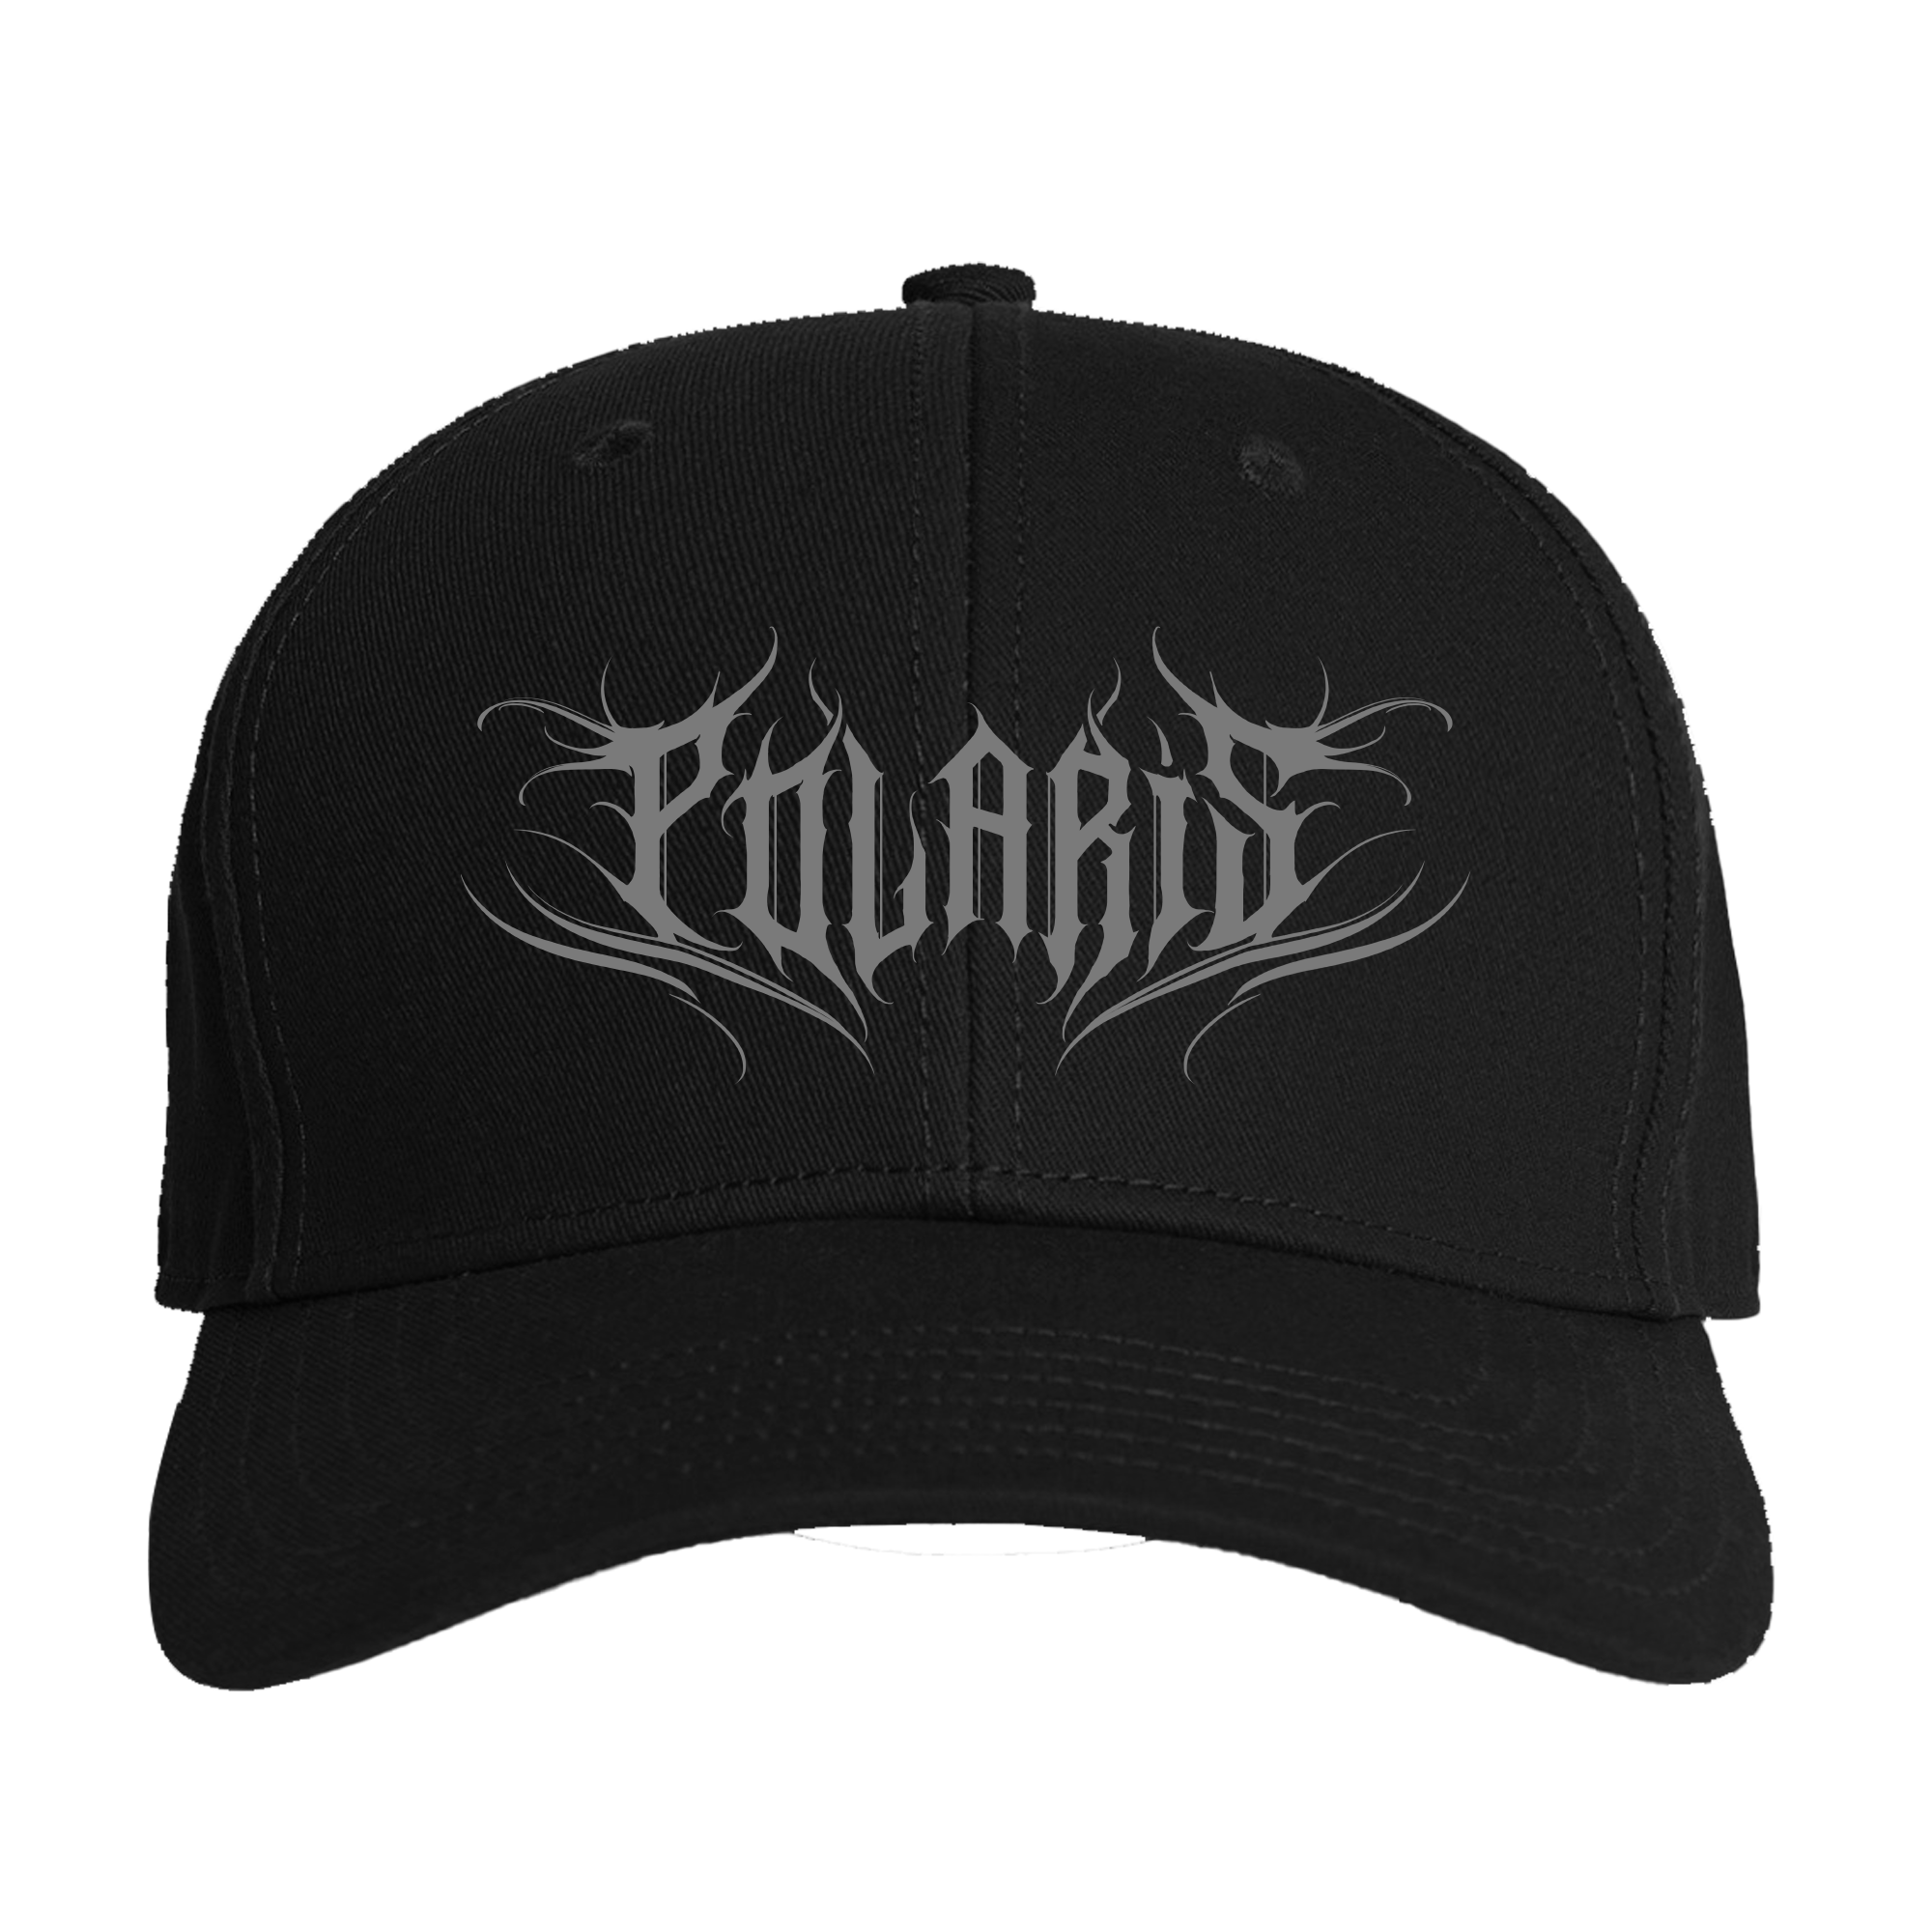 Polaris - Logo Dad Hat